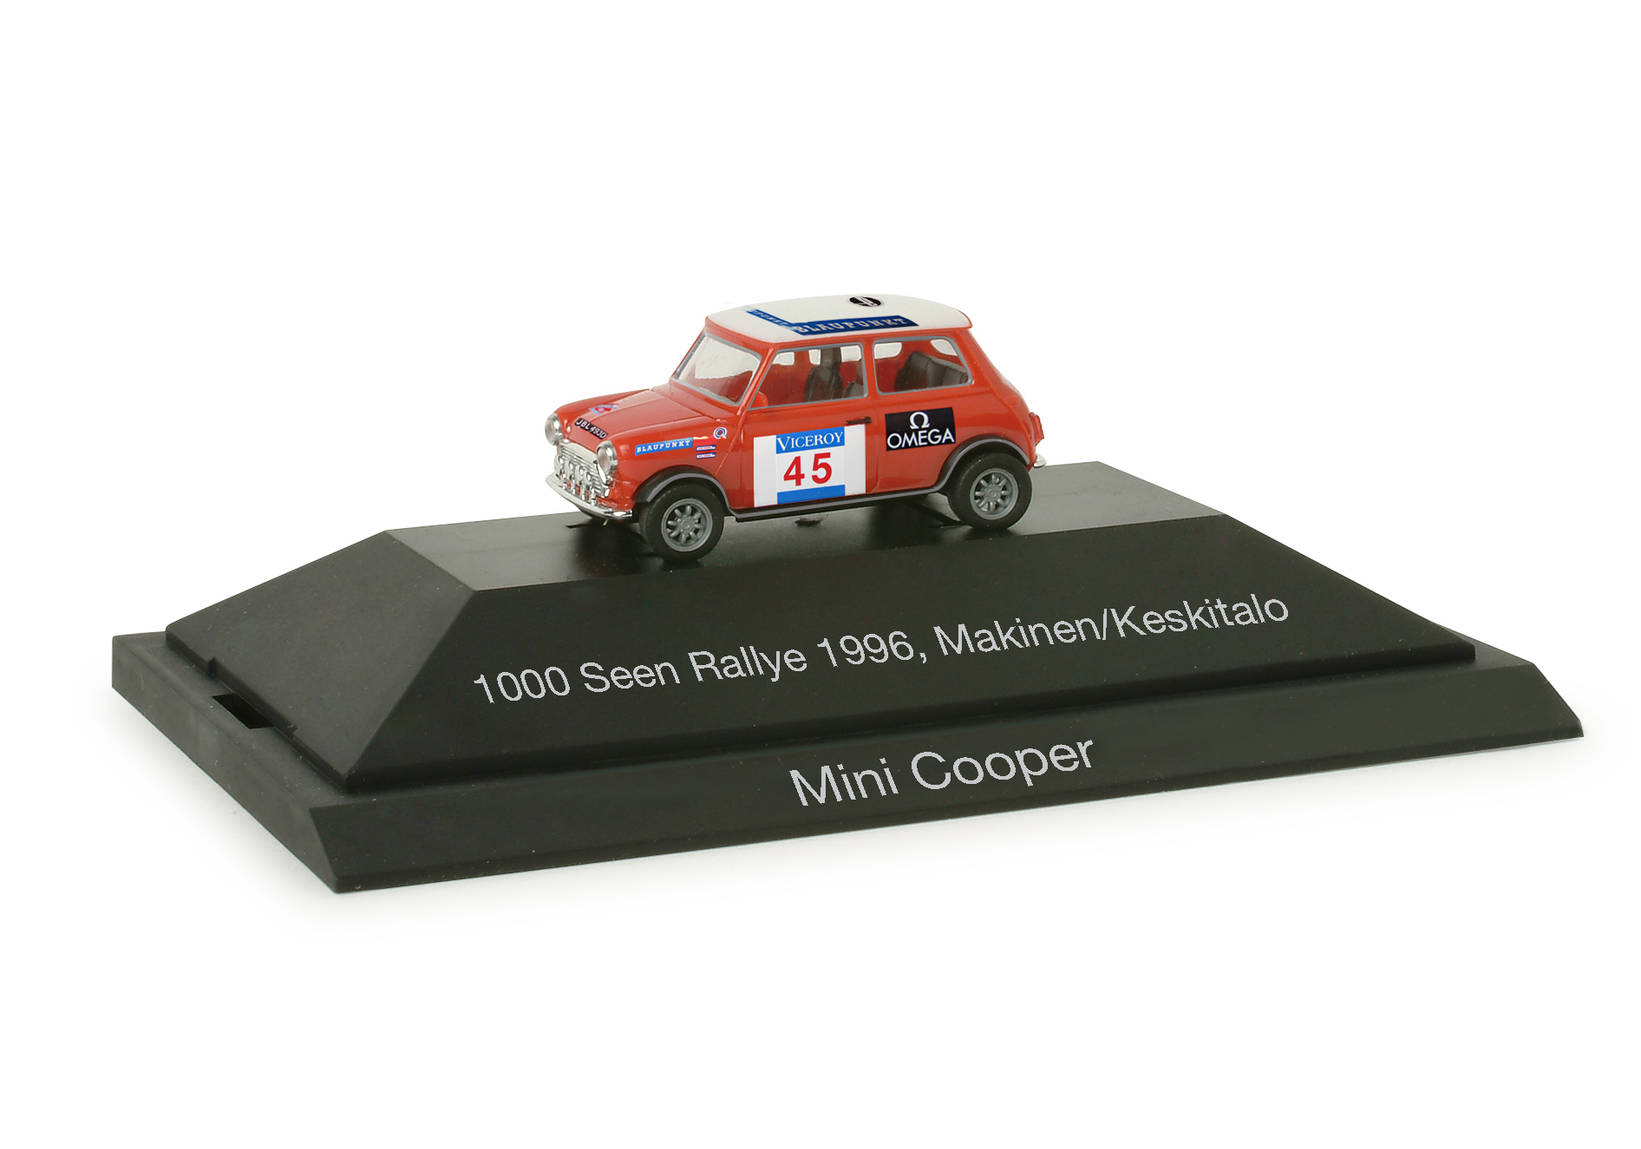 Mini Cooper Rallye Nr. 45, Makinen "1000 Seen Rallye 1966"